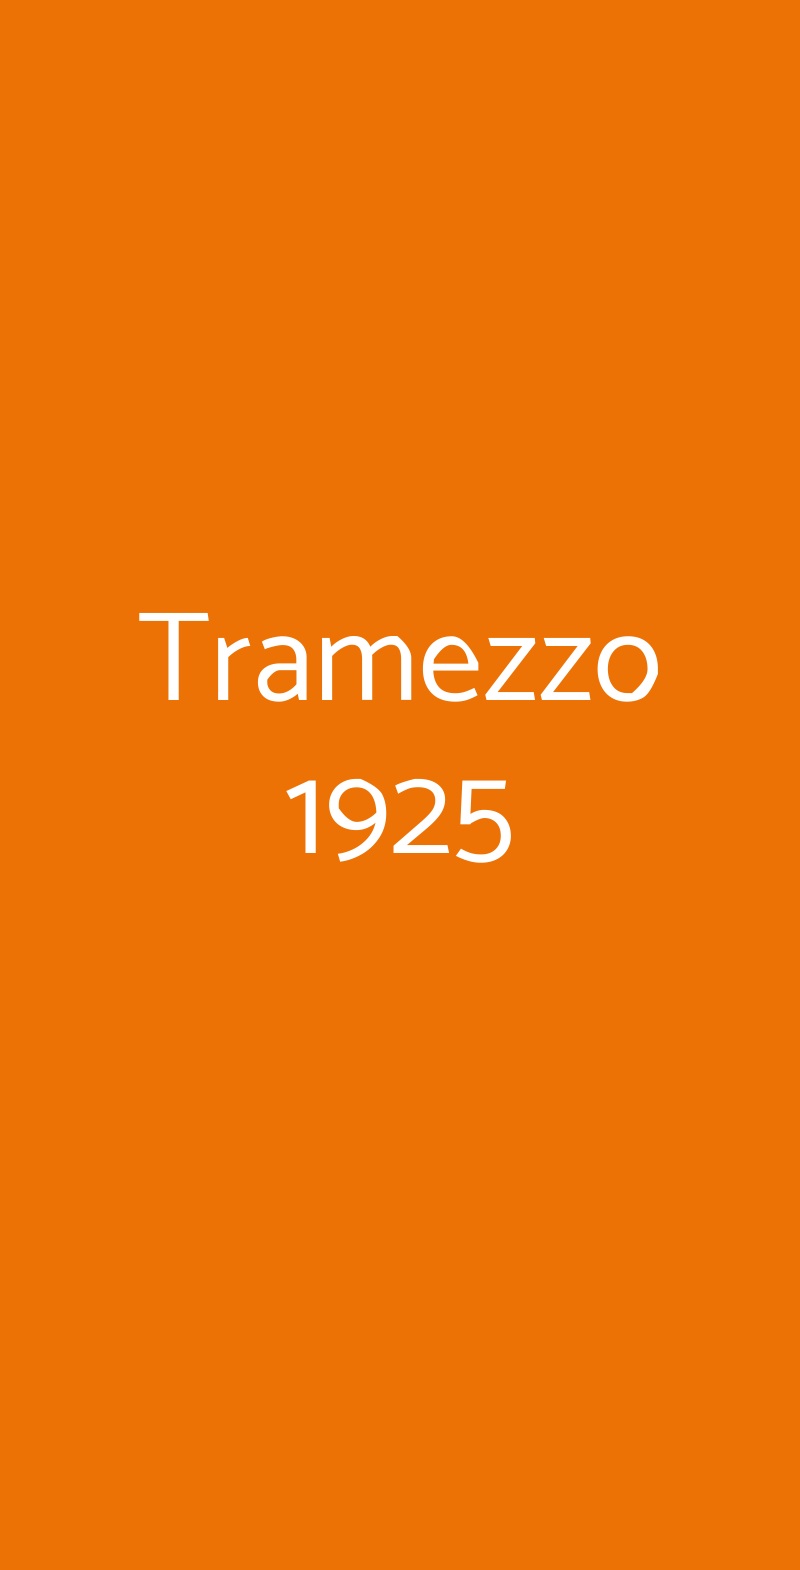 Tramezzo 1925 Cremona menù 1 pagina